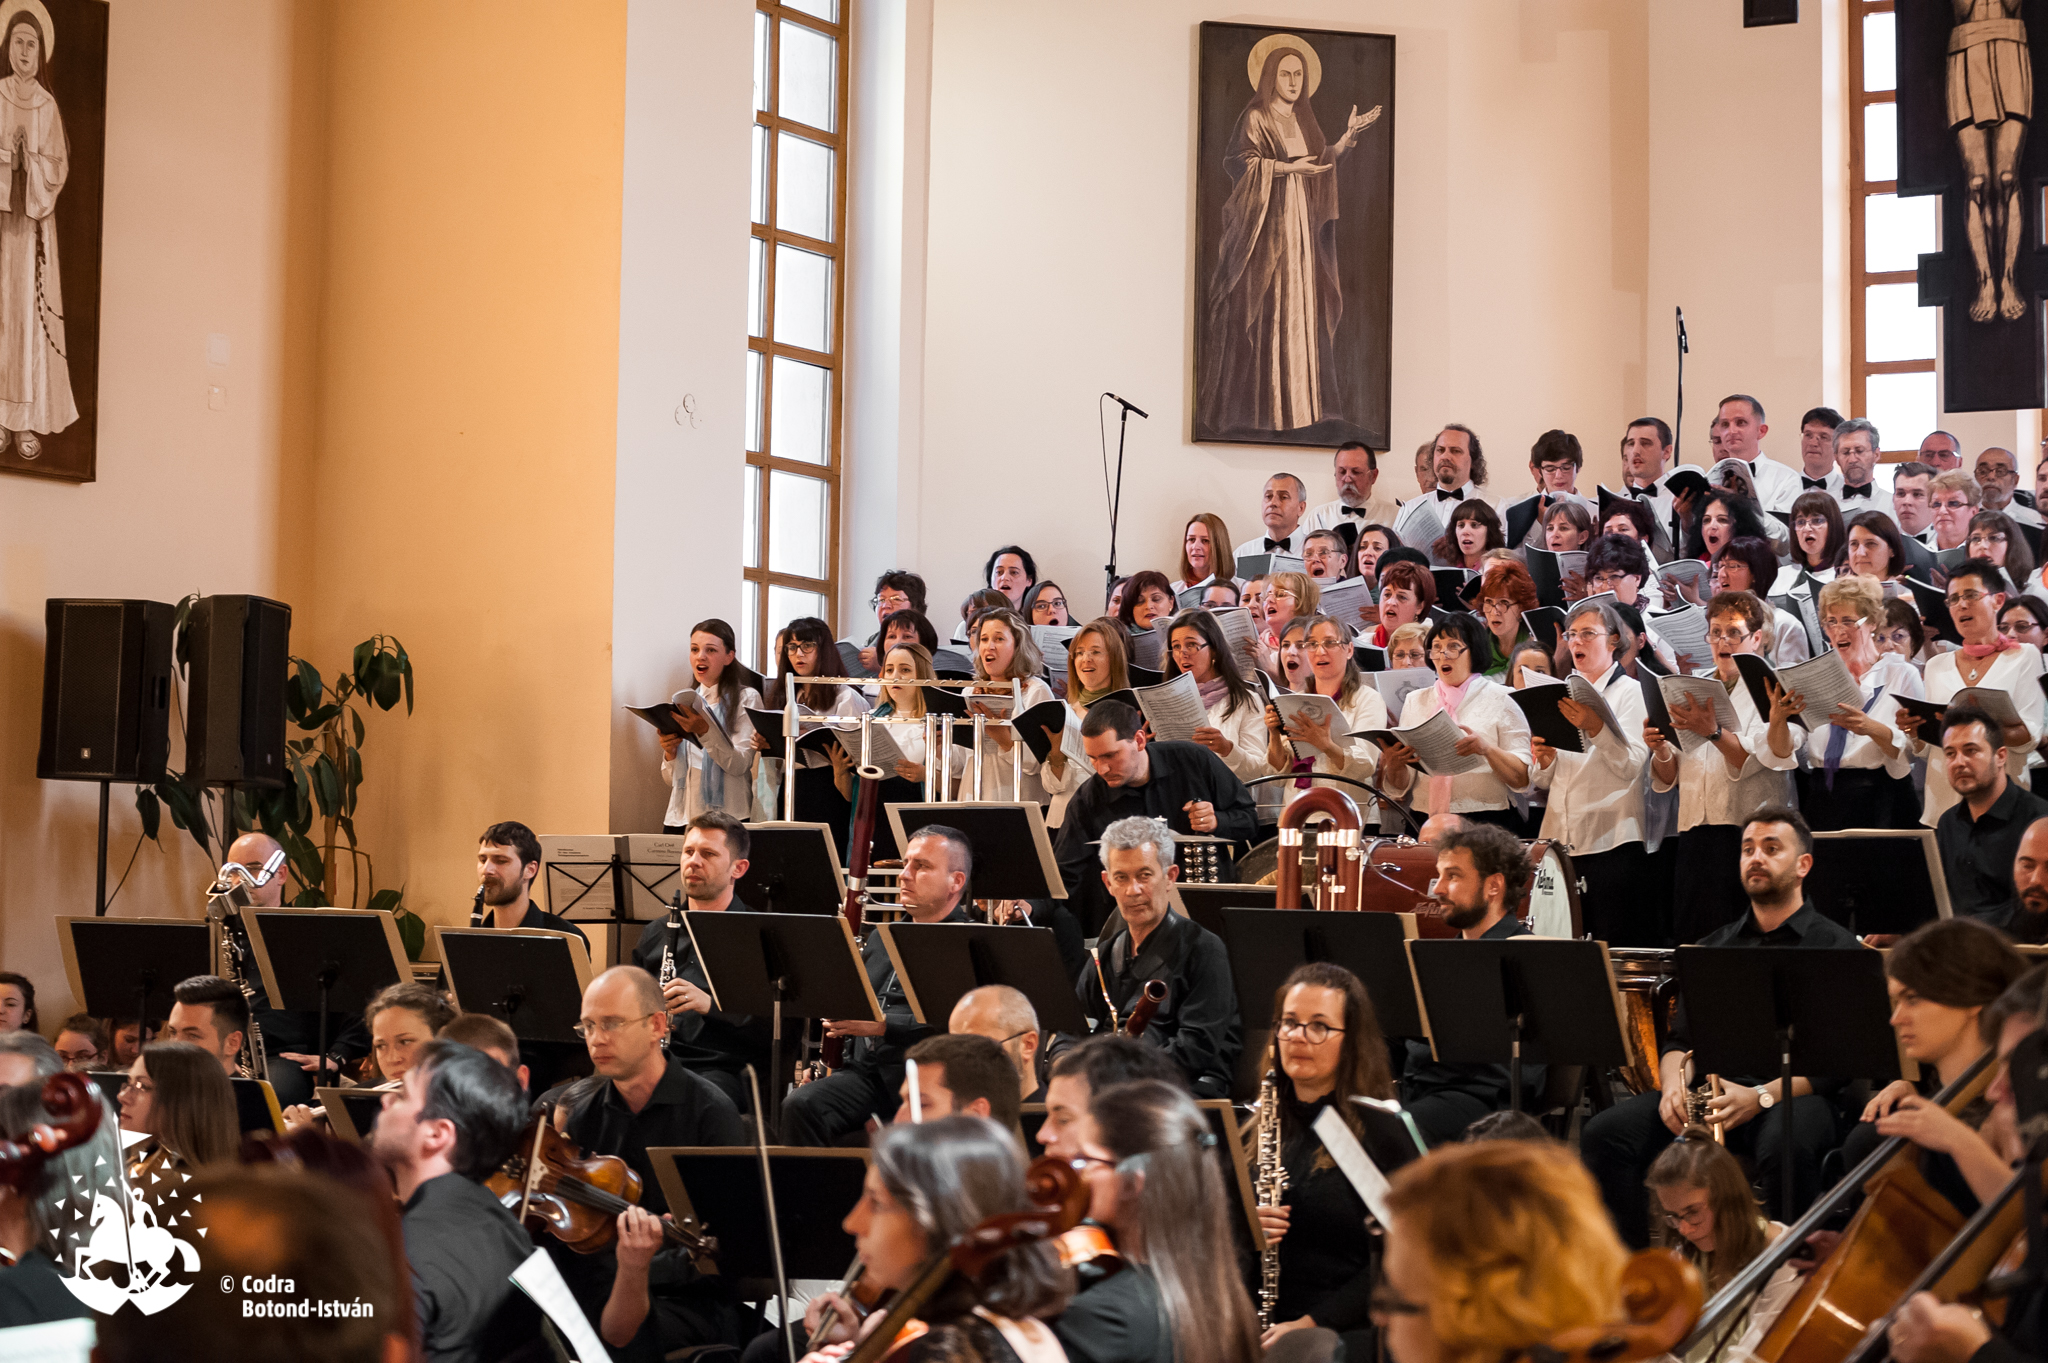 Zilele Sfântu Gheorghe: Concert festiv susținut de artiști locali și invitați